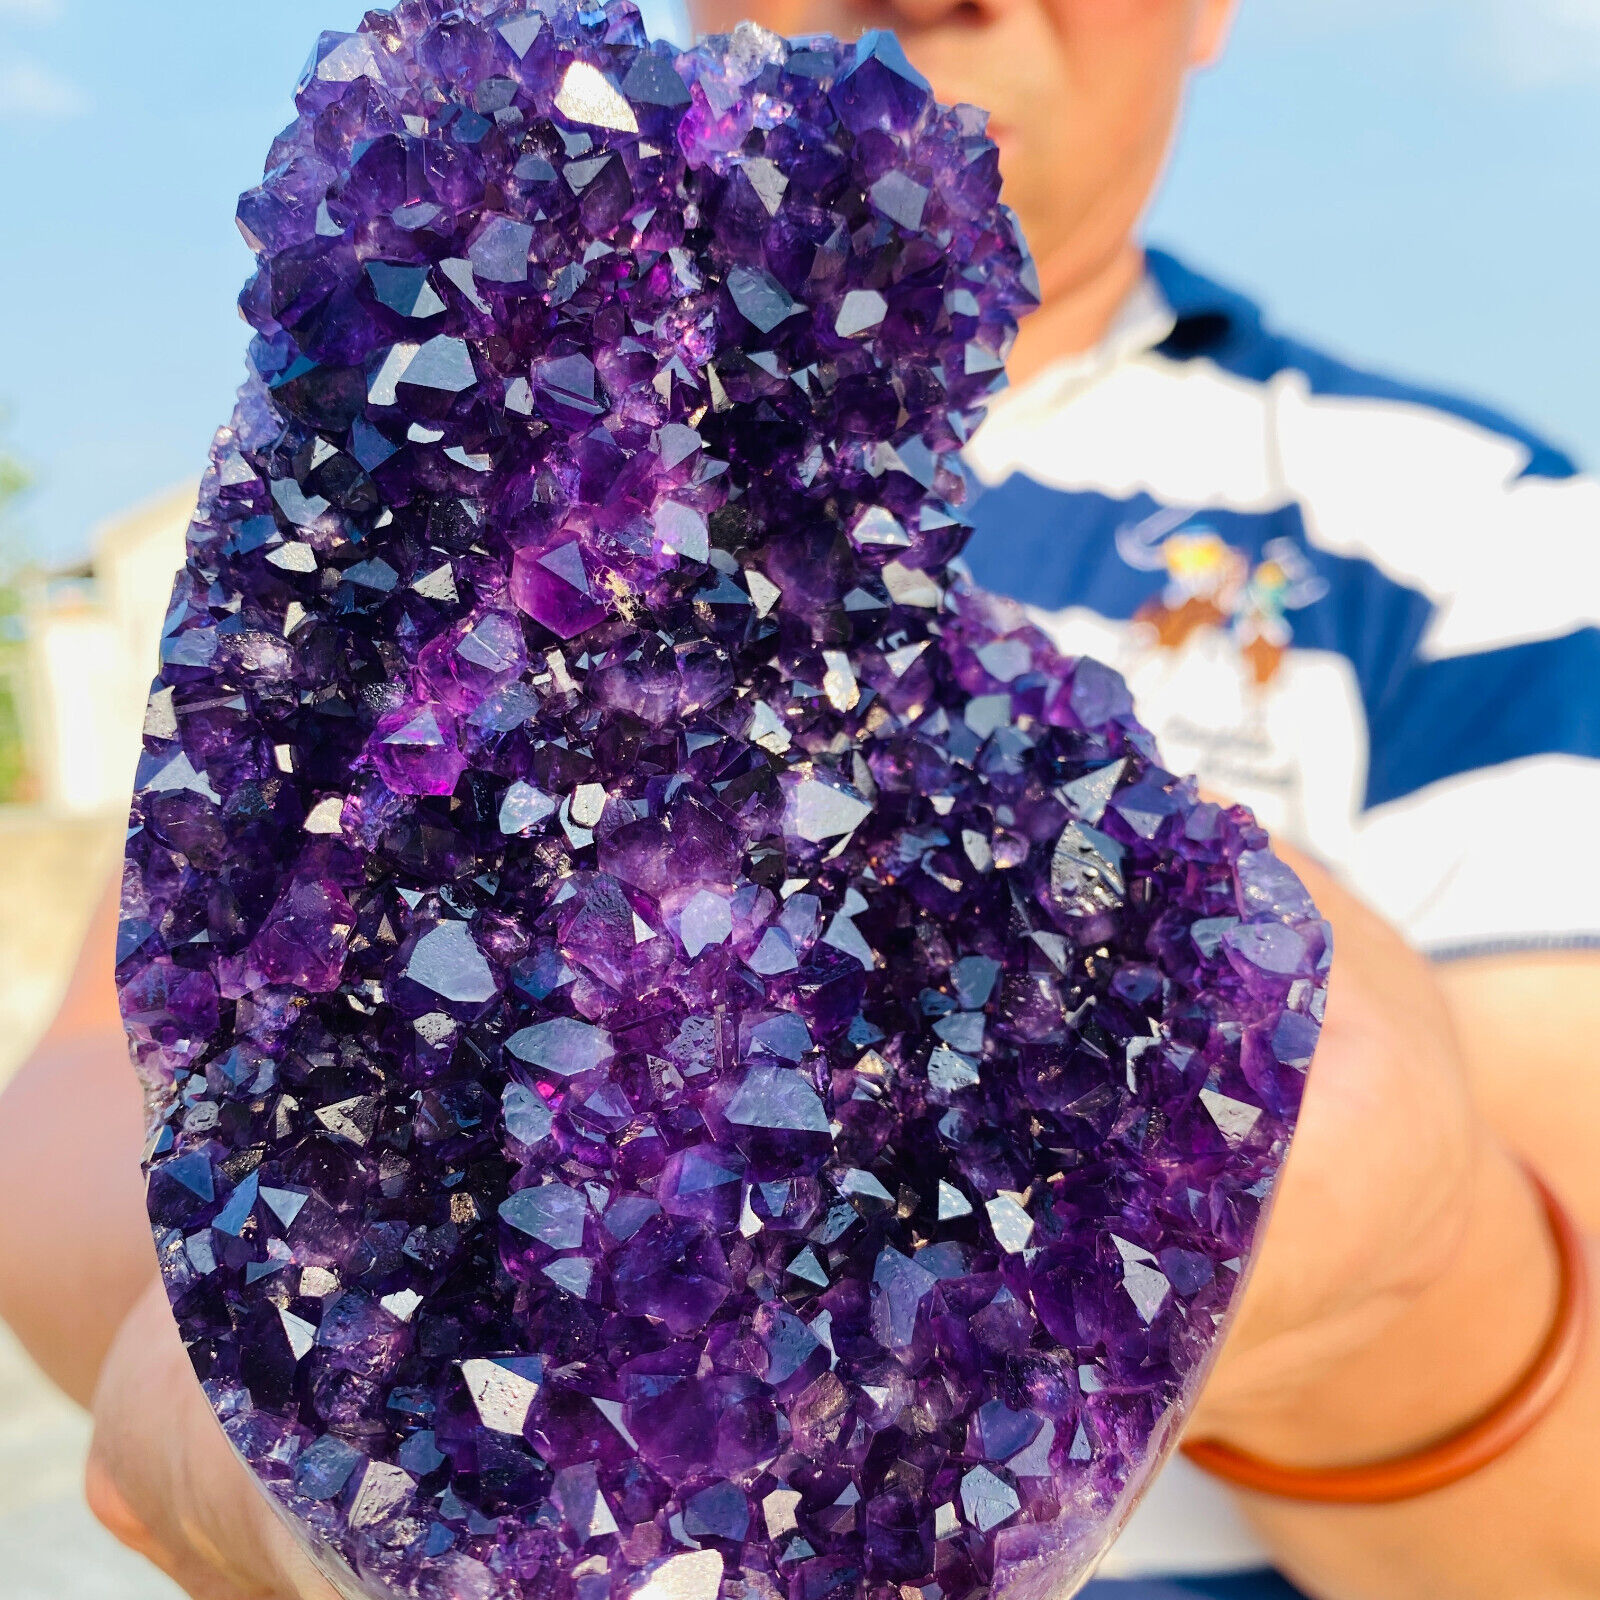 1025g Huge Natural amethyst Cluster purple Quartz Crystal Rare mineral Specimen